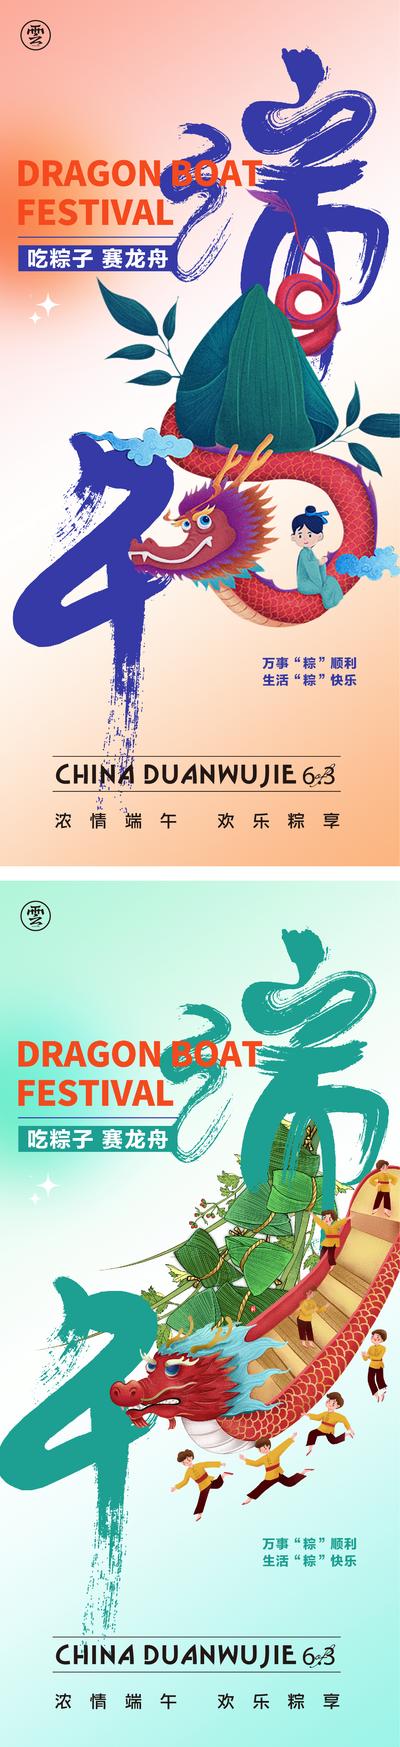 南门网 广告 海报 传统节日 端午 粽子 龙